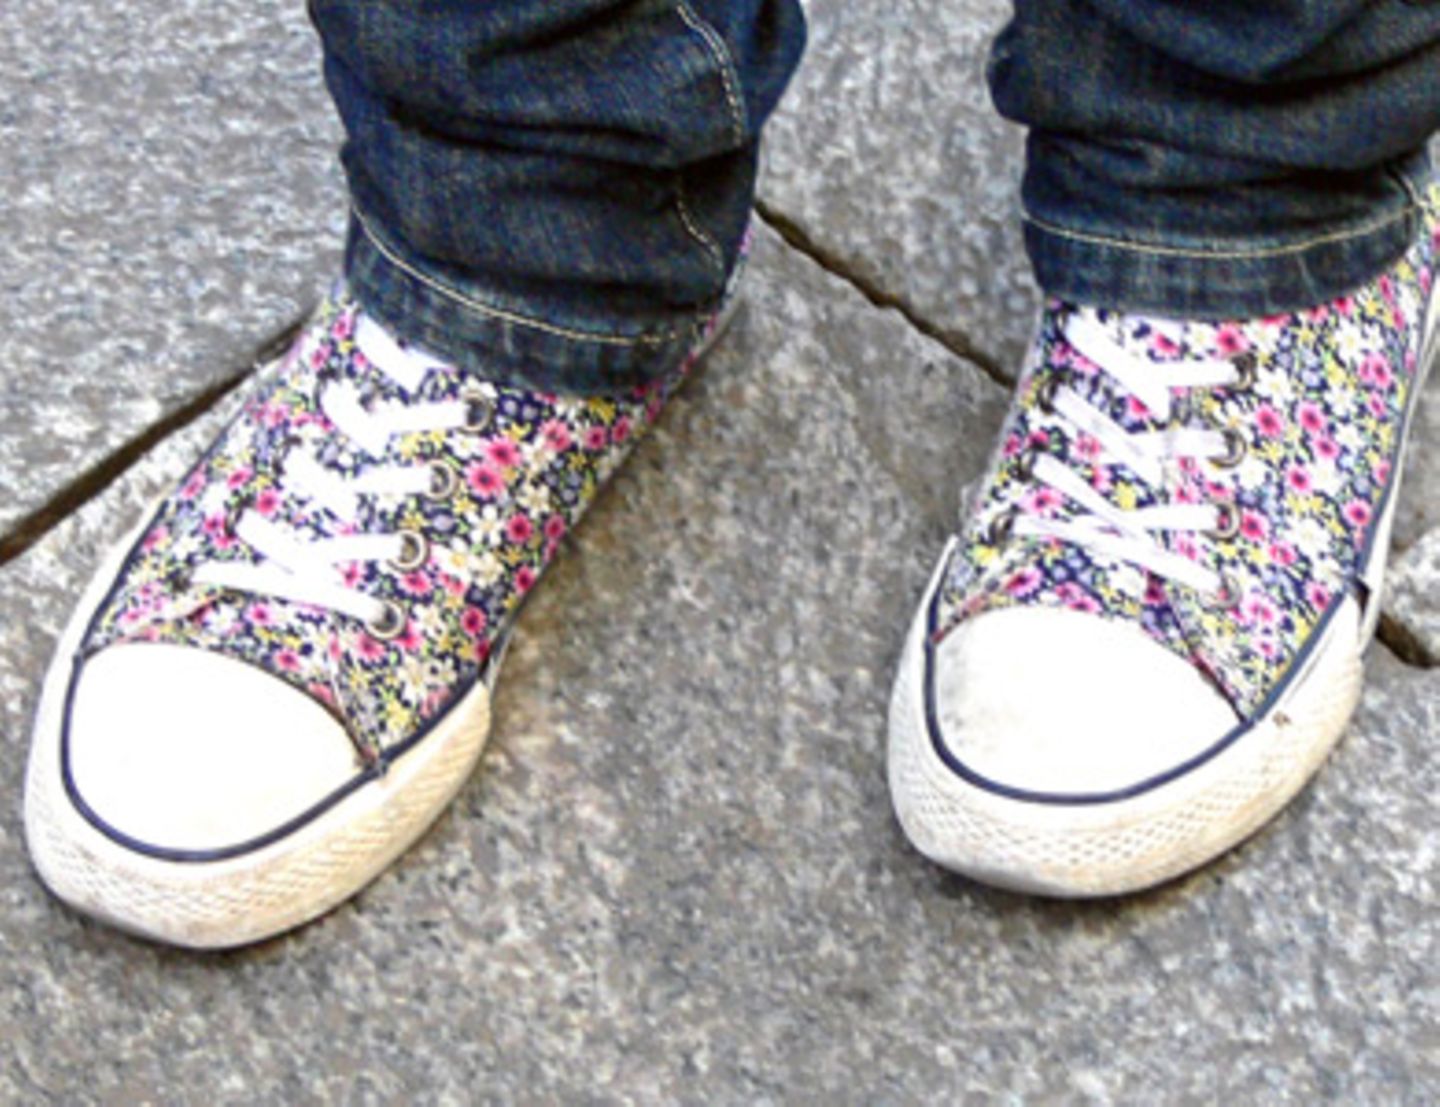 Diese sommerlichen Sneakers mit Blümchenmuster machen gute Laune! Selbst an trüben Wintertagen wecken diese Schuhe Sommergefühle. Besitzerin Svenja,17 hat die Sneakers von Deichmann.